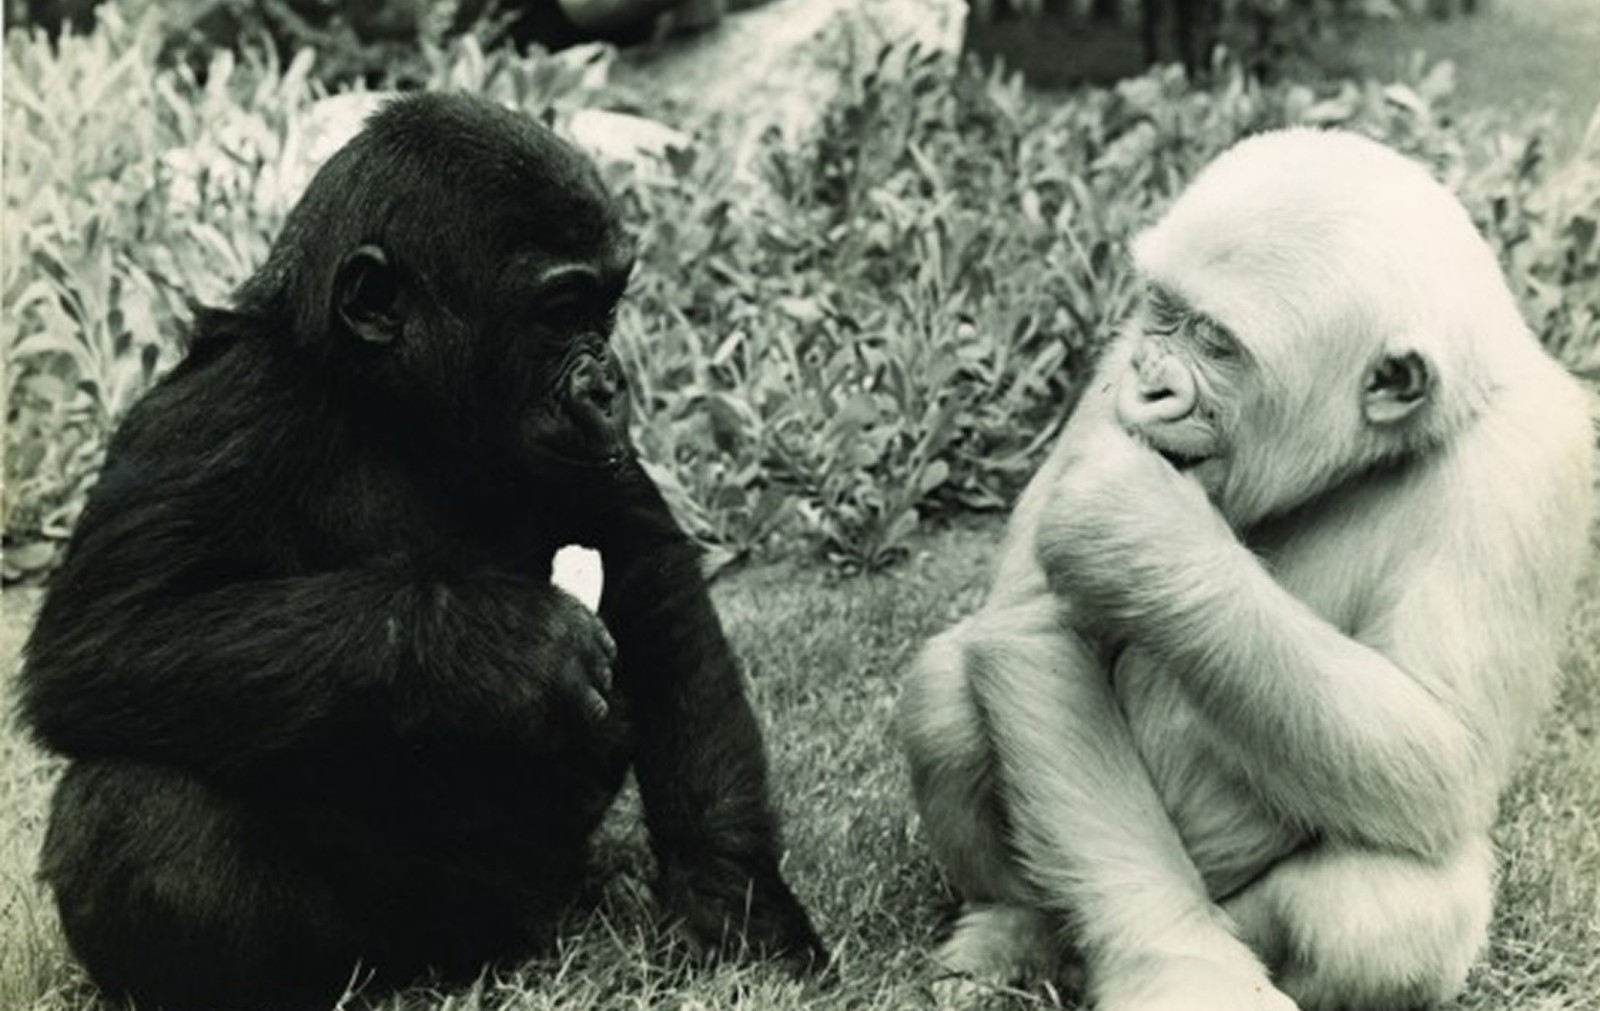 1966 - Zoo Barcelona